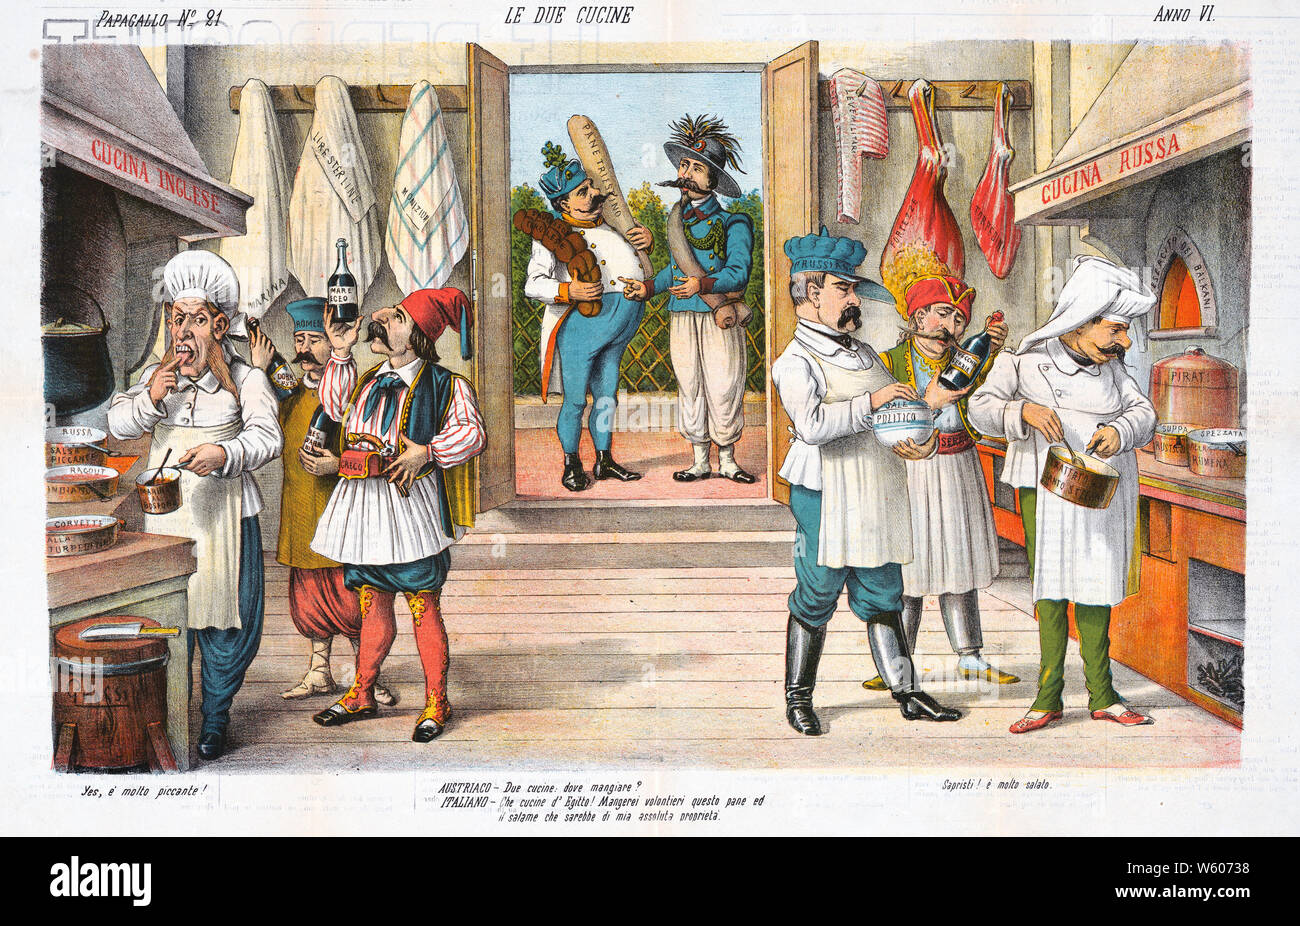 Italienischen politischen Karikatur zeigt die Innenansicht eines großen  Raum in zwei Küchen unterteilt, die "Cucina Allemand' auf der linken Seite  und die "Cucina Russa' rechts; die britischen Koch, Weinprobe, ein Gericht  mit